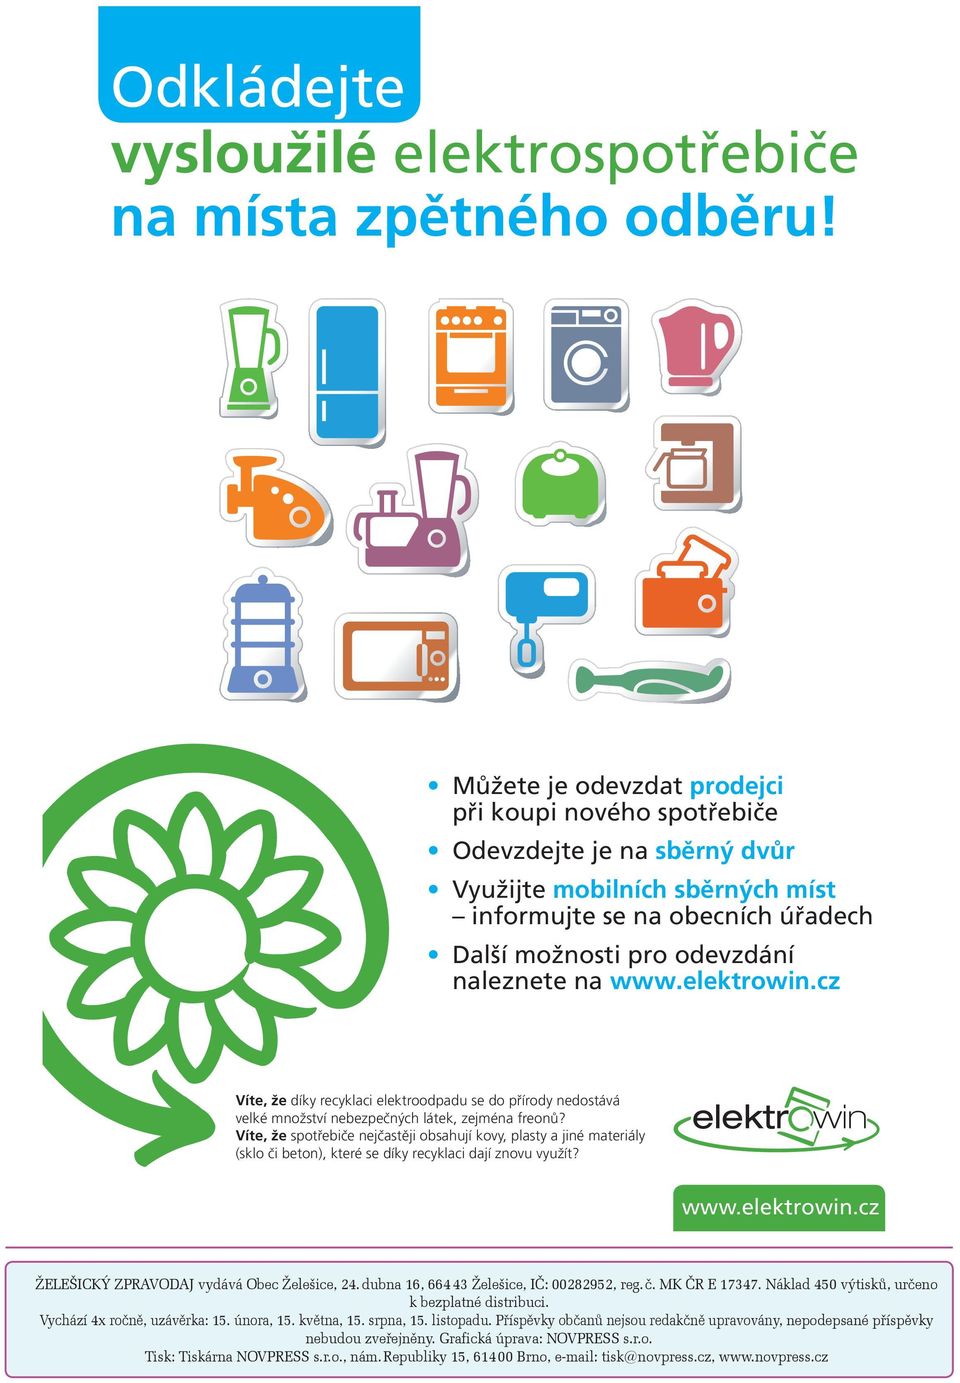 elektrowin.cz Víte, že díky recyklaci elektroodpadu se do přírody nedostává velké množství nebezpečných látek, zejména freonů?